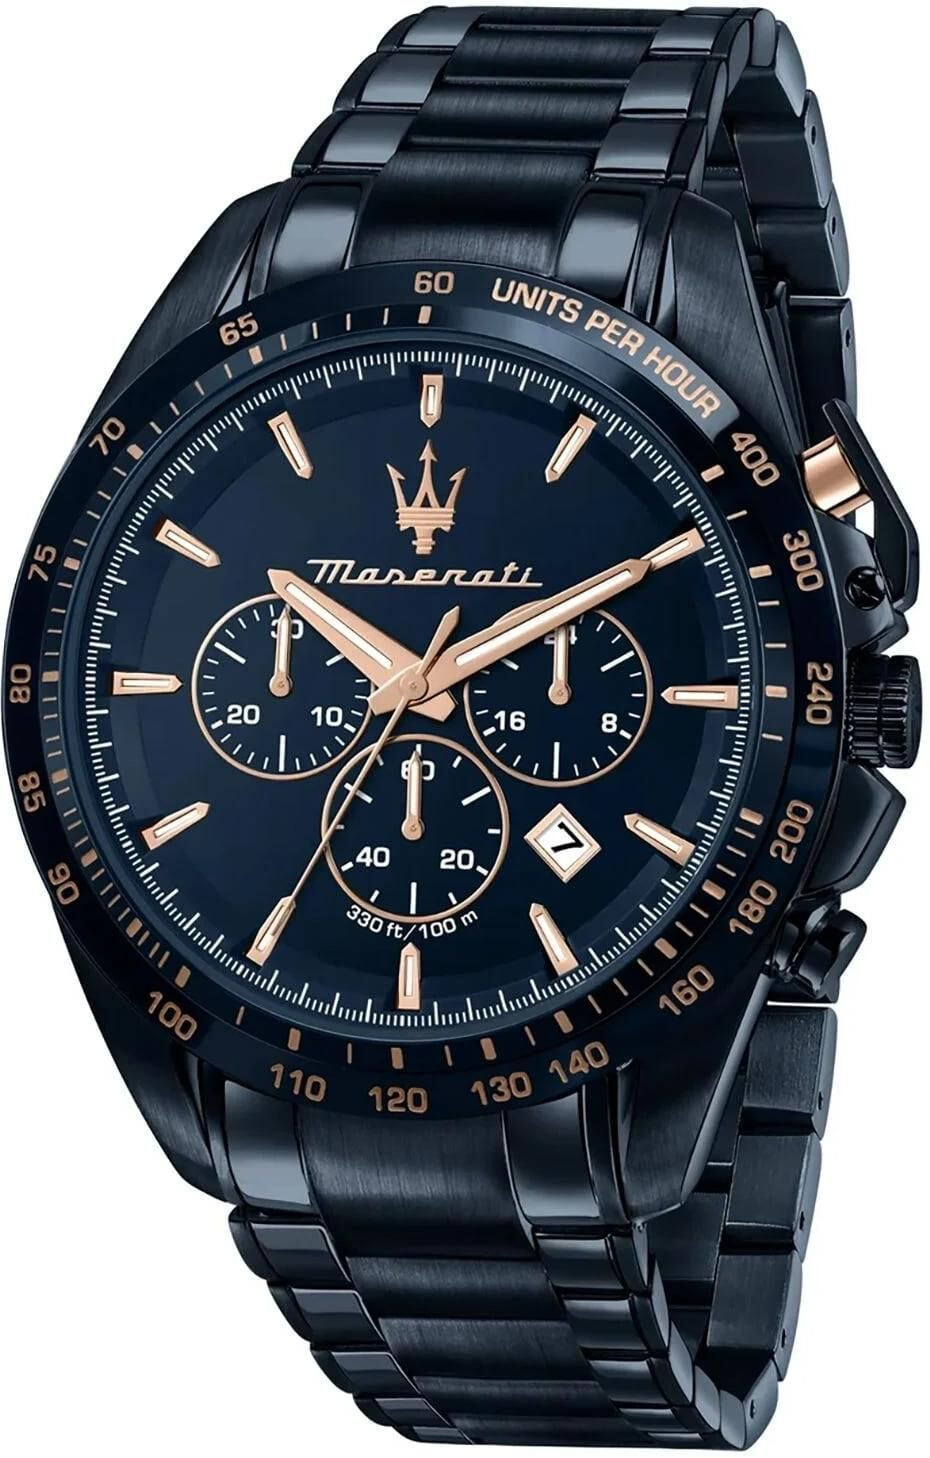 Maserati R8873612054 - Armbanduhr Traguardo Edition - Preisvergleich ab Quarz Blue € - 246,00 bei 